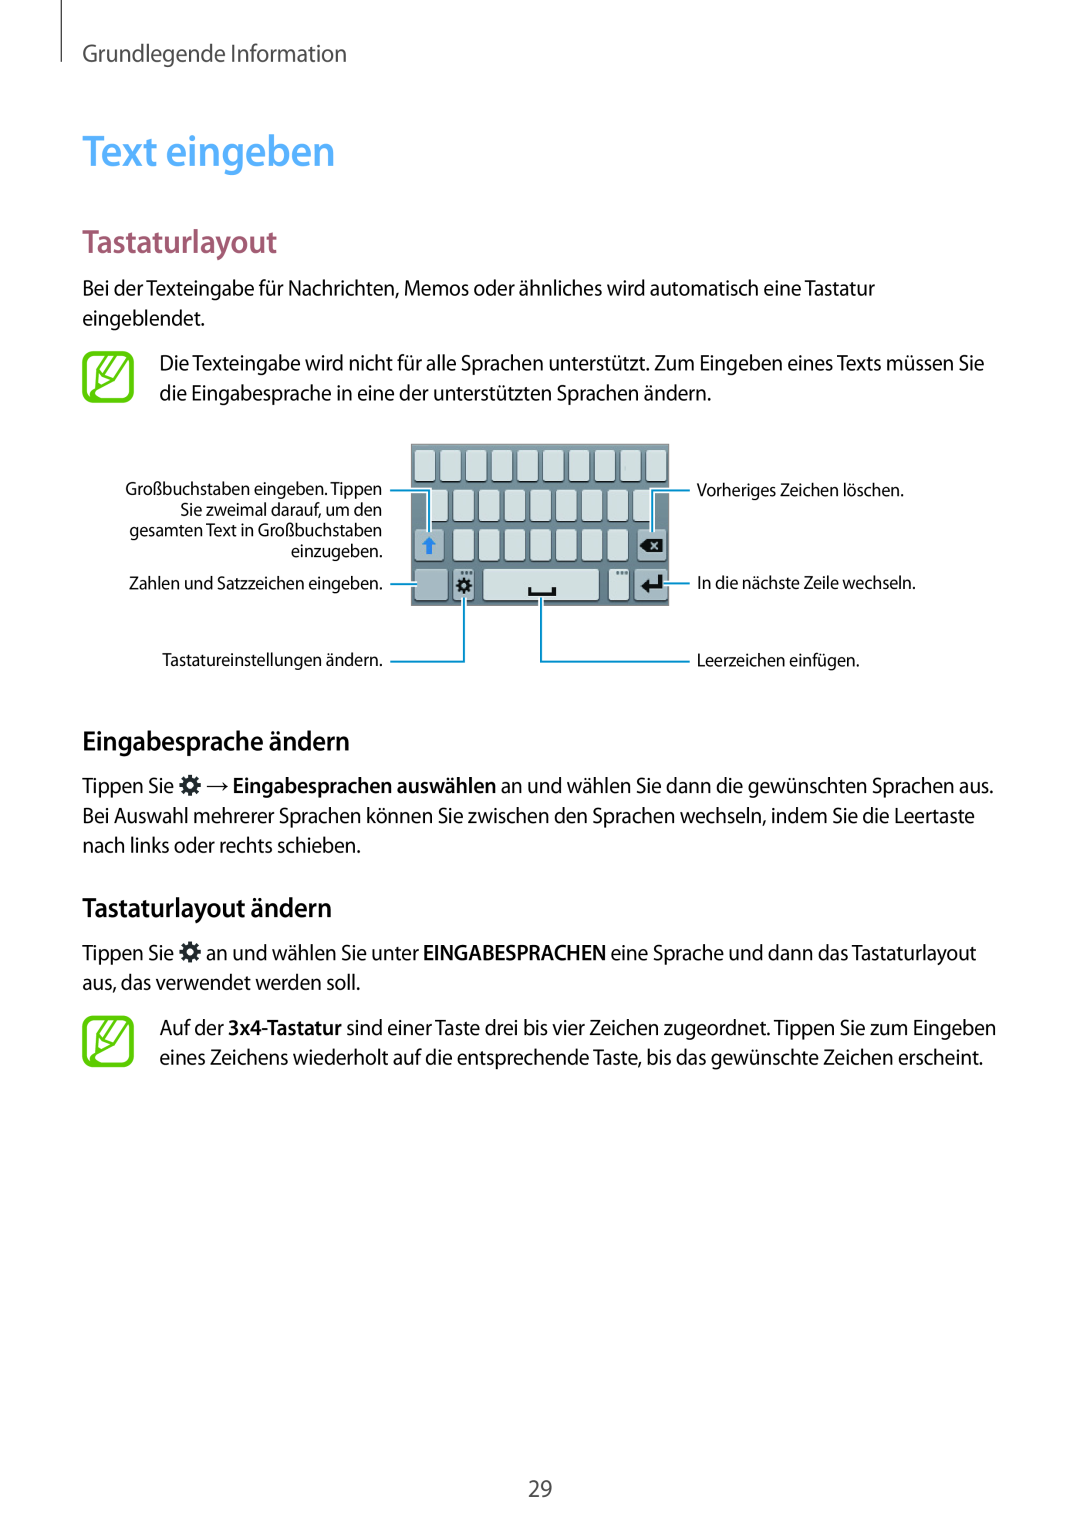 Samsung SM-G110HZWADBT manual Text eingeben, Eingabesprache ändern, Tastaturlayout ändern, Grundlegende Information 